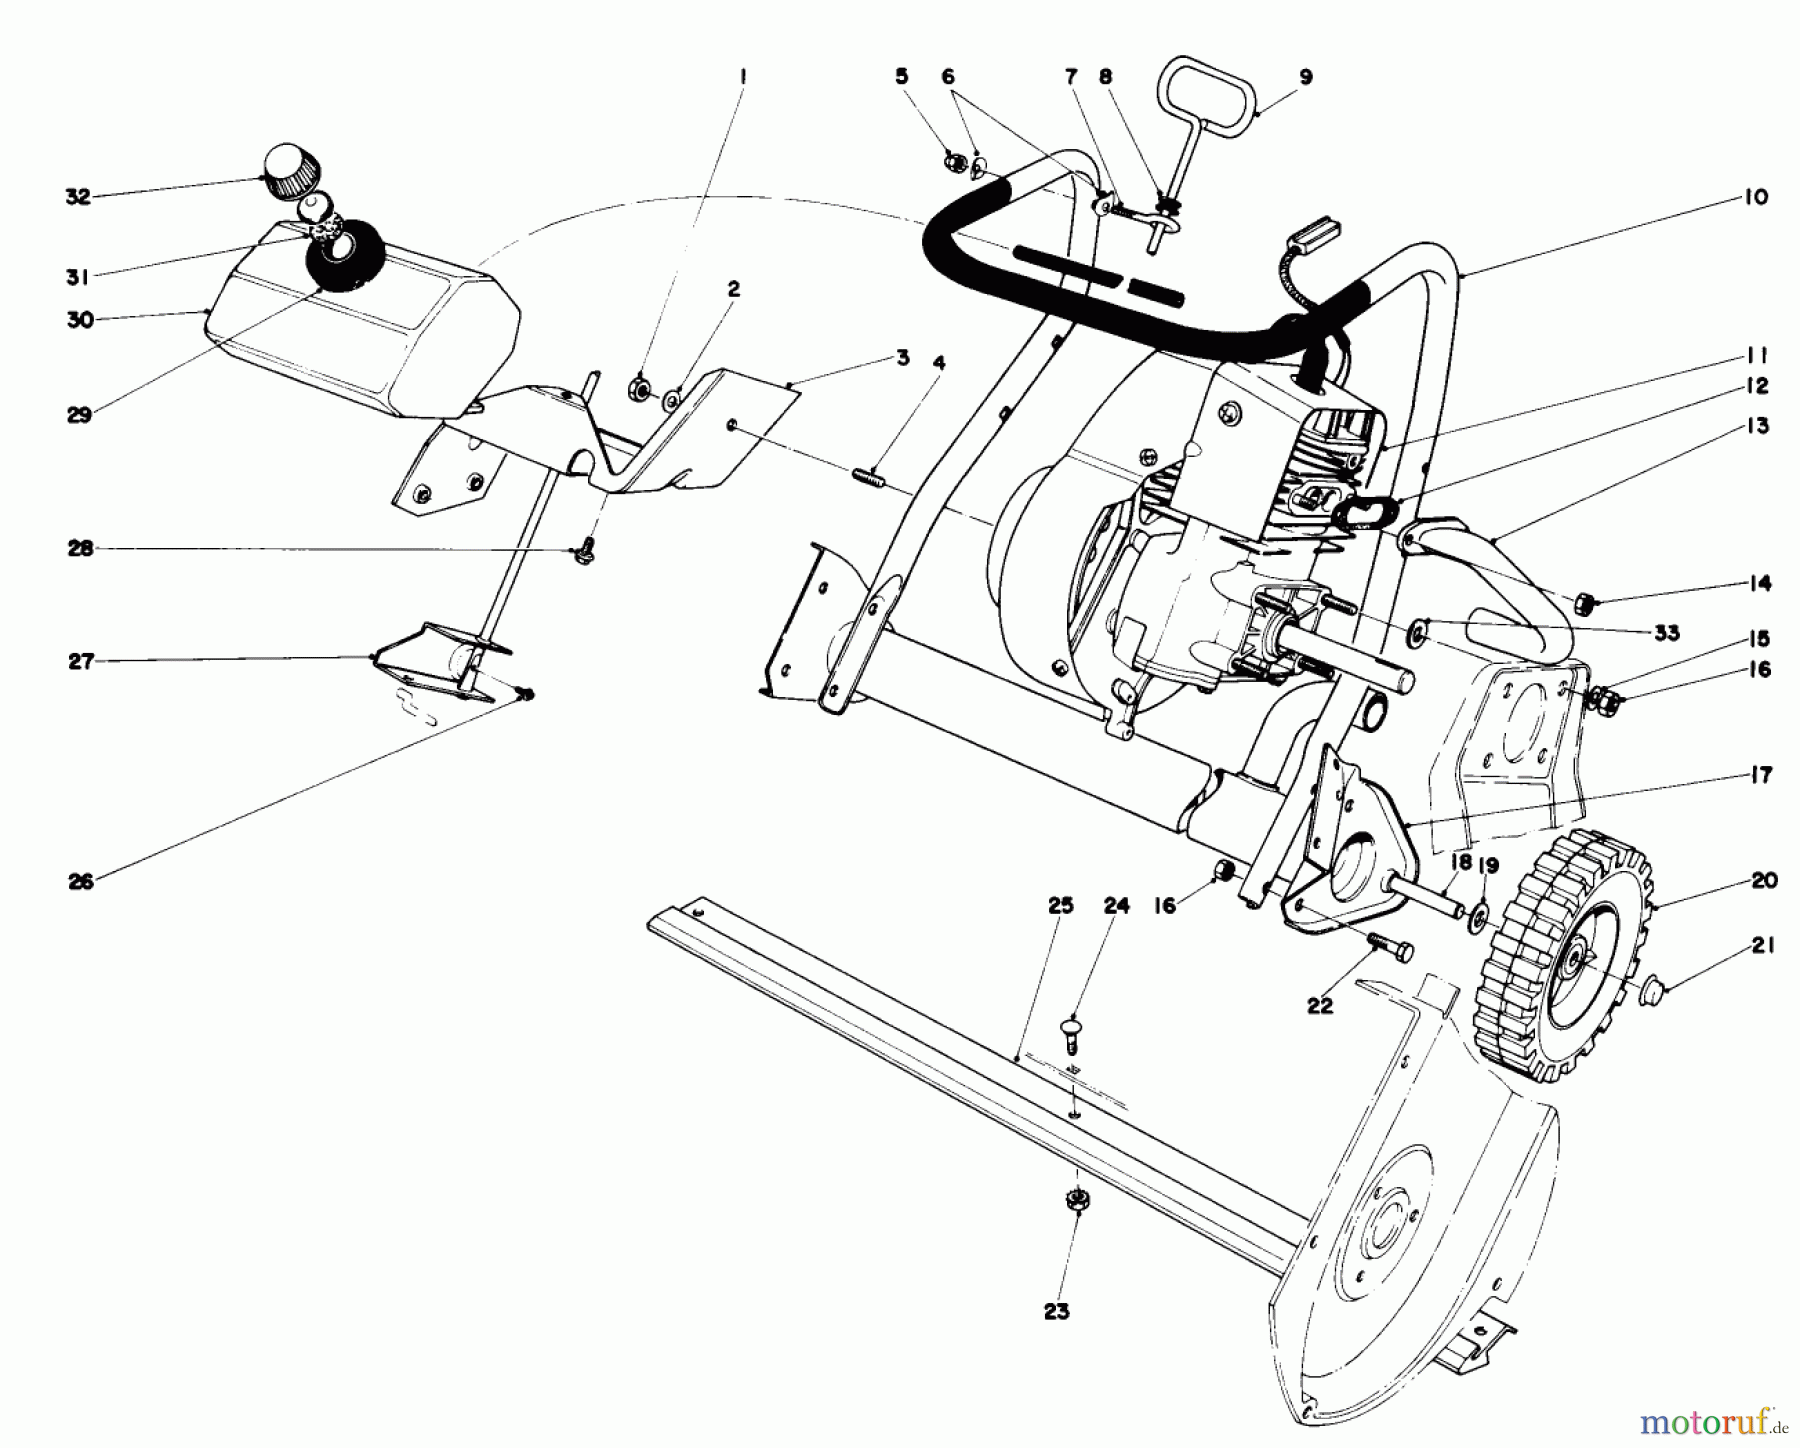  Toro Neu Snow Blowers/Snow Throwers Seite 1 38120 (S-200) - Toro S-200 Snowthrower, 1980 (0015001-0099999) ENGINE ASSEMBLY